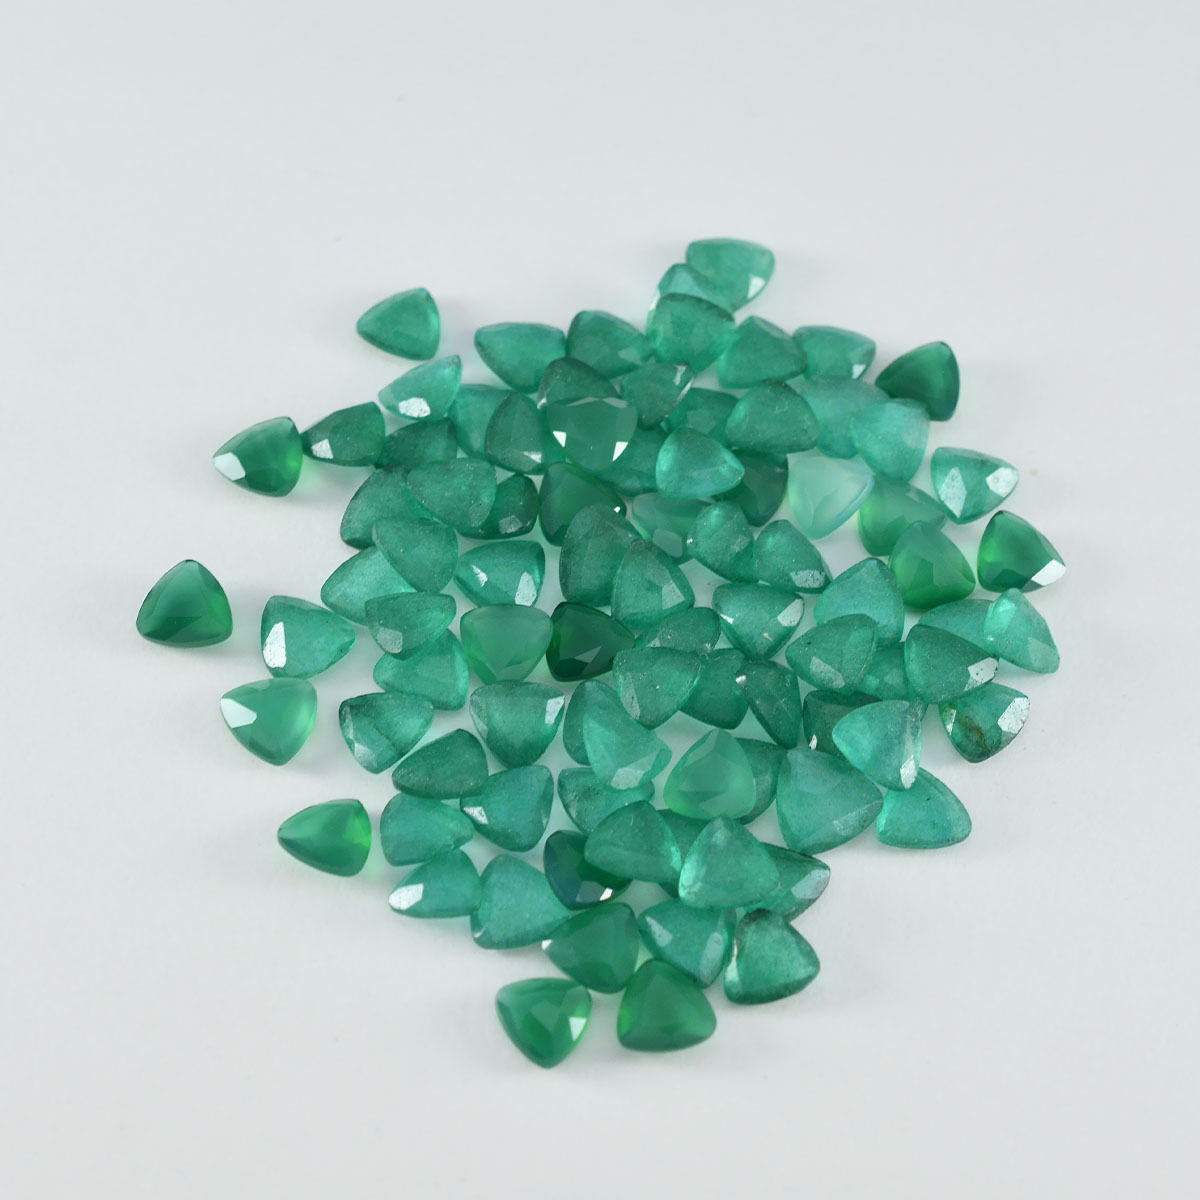 riyogems 1 st äkta grön onyx fasetterad 5x5 mm biljoner form lös sten av hög kvalitet